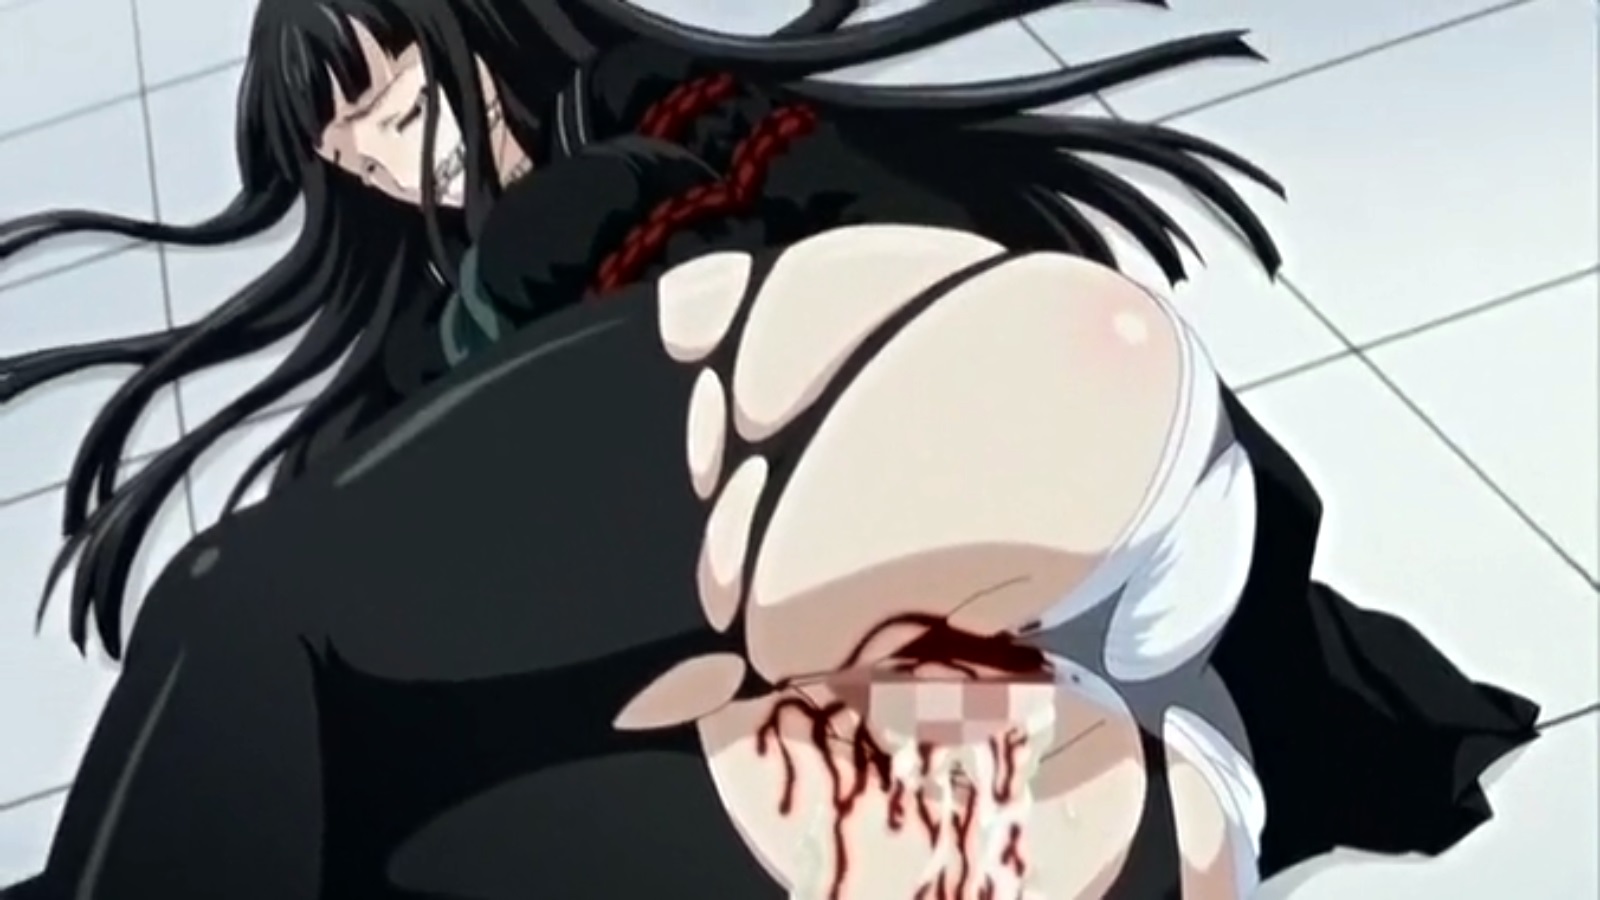 1600px x 900px - Brutal Hentai Movie Rape, Blood, Ache, Death | HentaiMovie.Tv